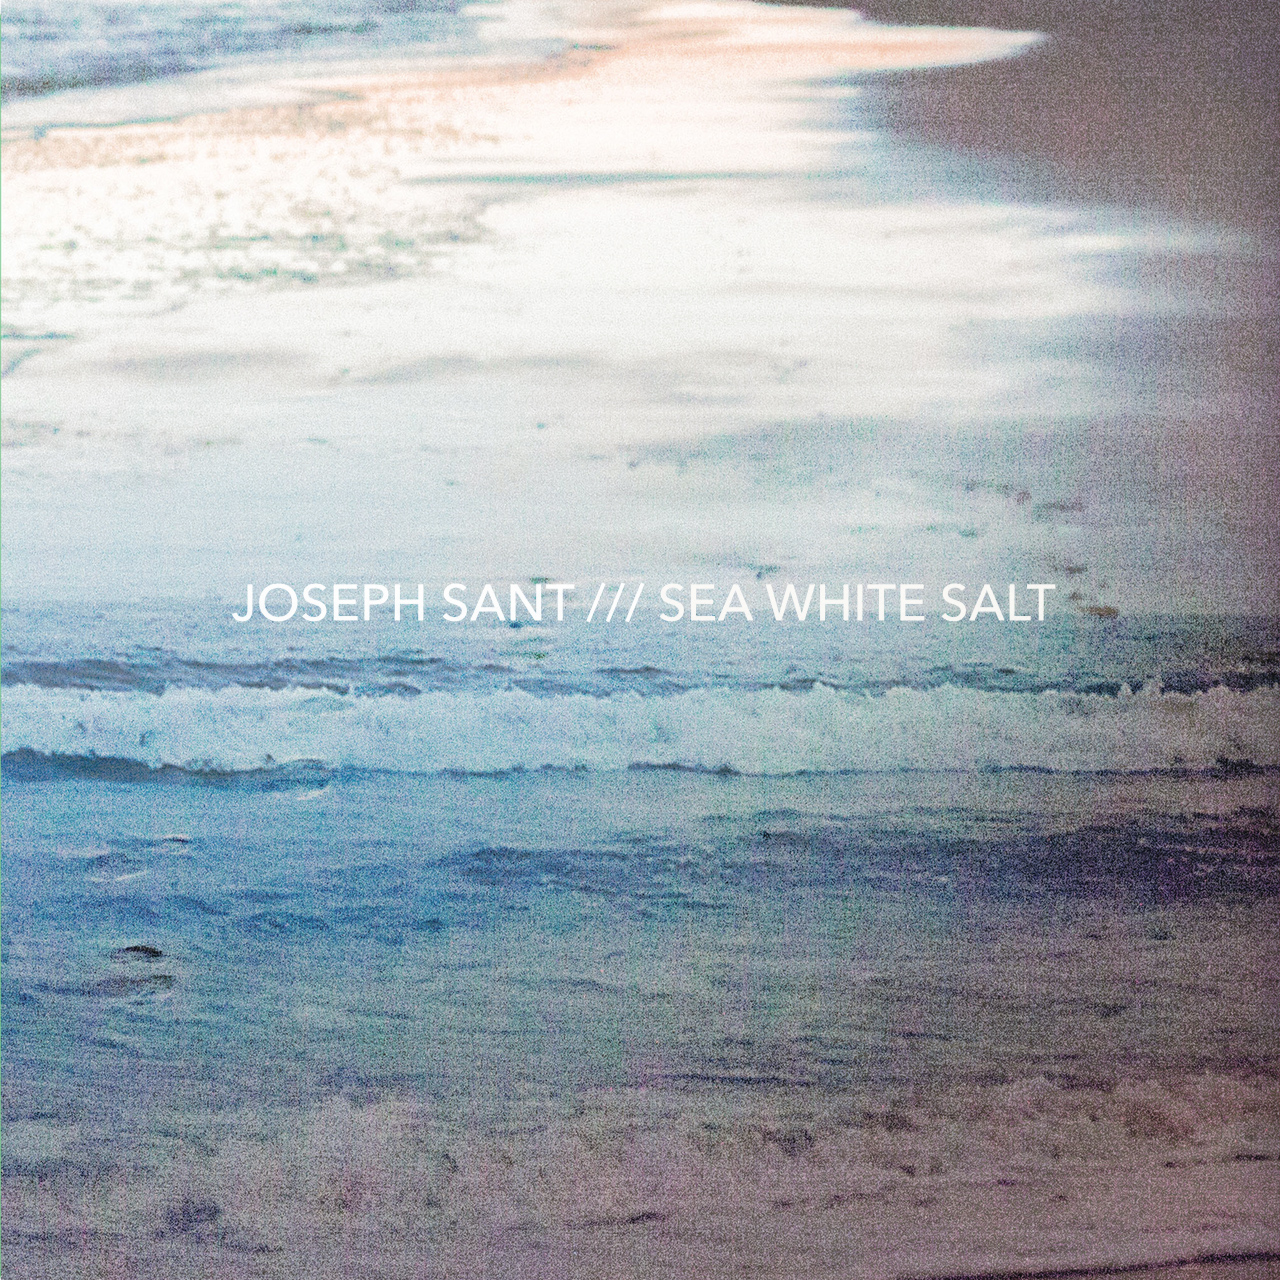  Joseph Sant – Sea White Salt